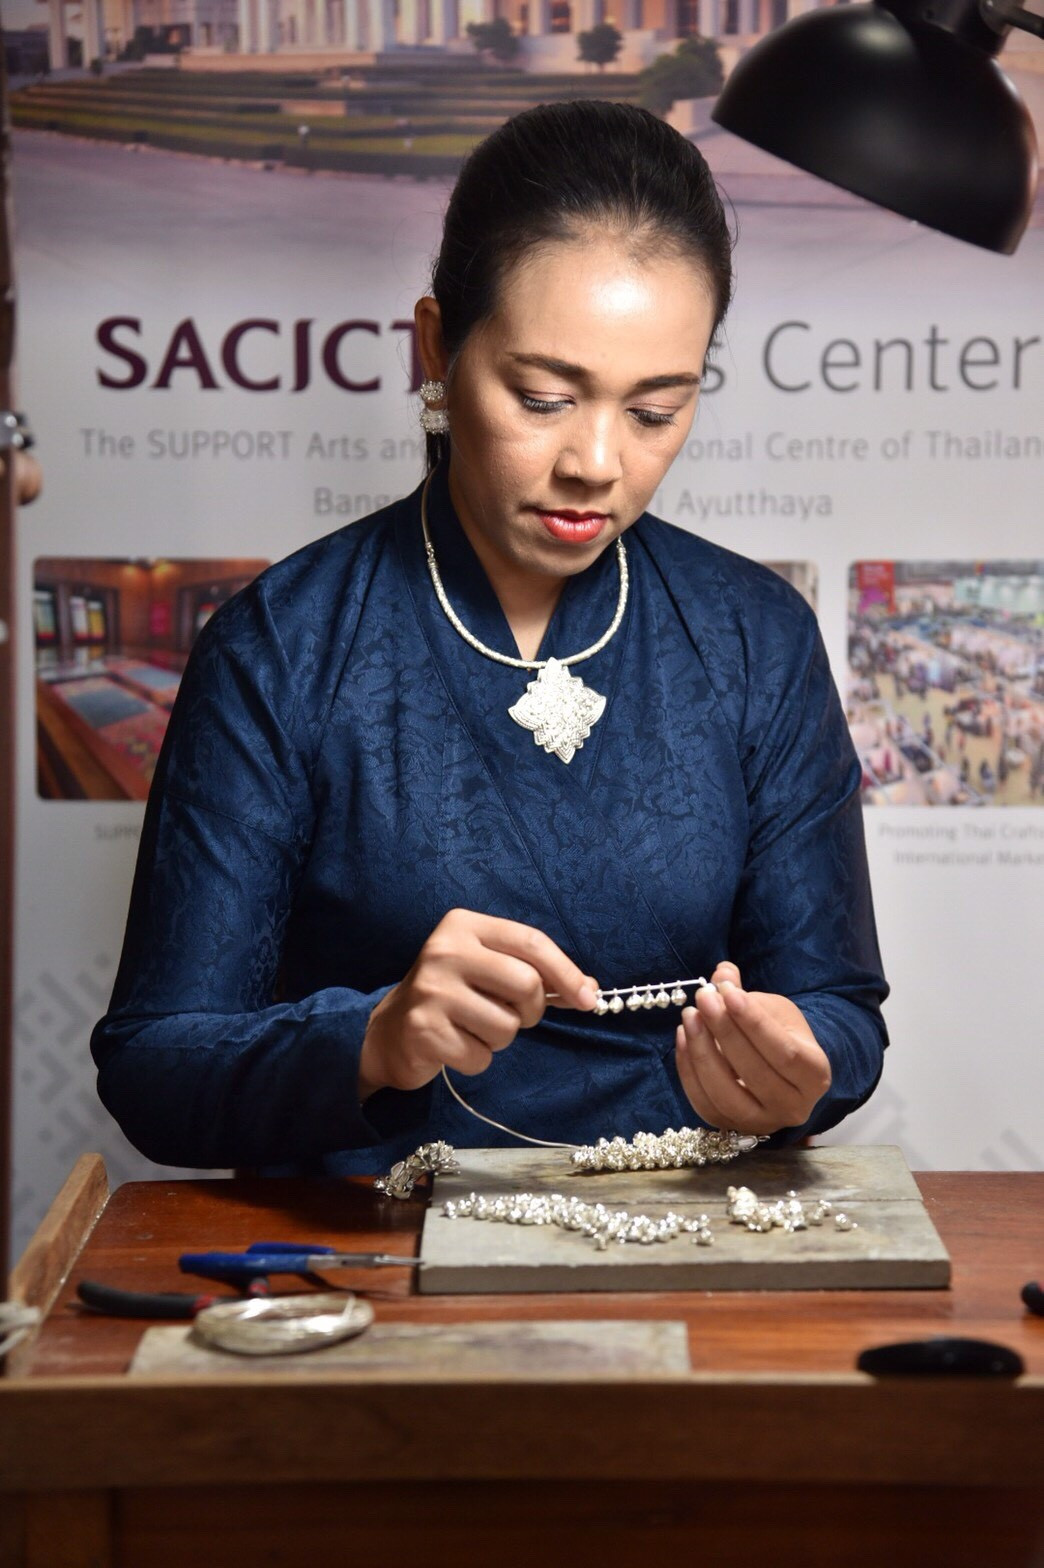 “ของขวัญผู้นำอาเซียน ฝีมือครูช่างศิลปหัตถกรรมของ SACICT มากกว่าความงดงามคือ การแสดงไมตรีจิตของคนไทย เรียงร้อยผสานพลังประชาคมอาเซียนสู่การพัฒนาที่ยั่งยืน”